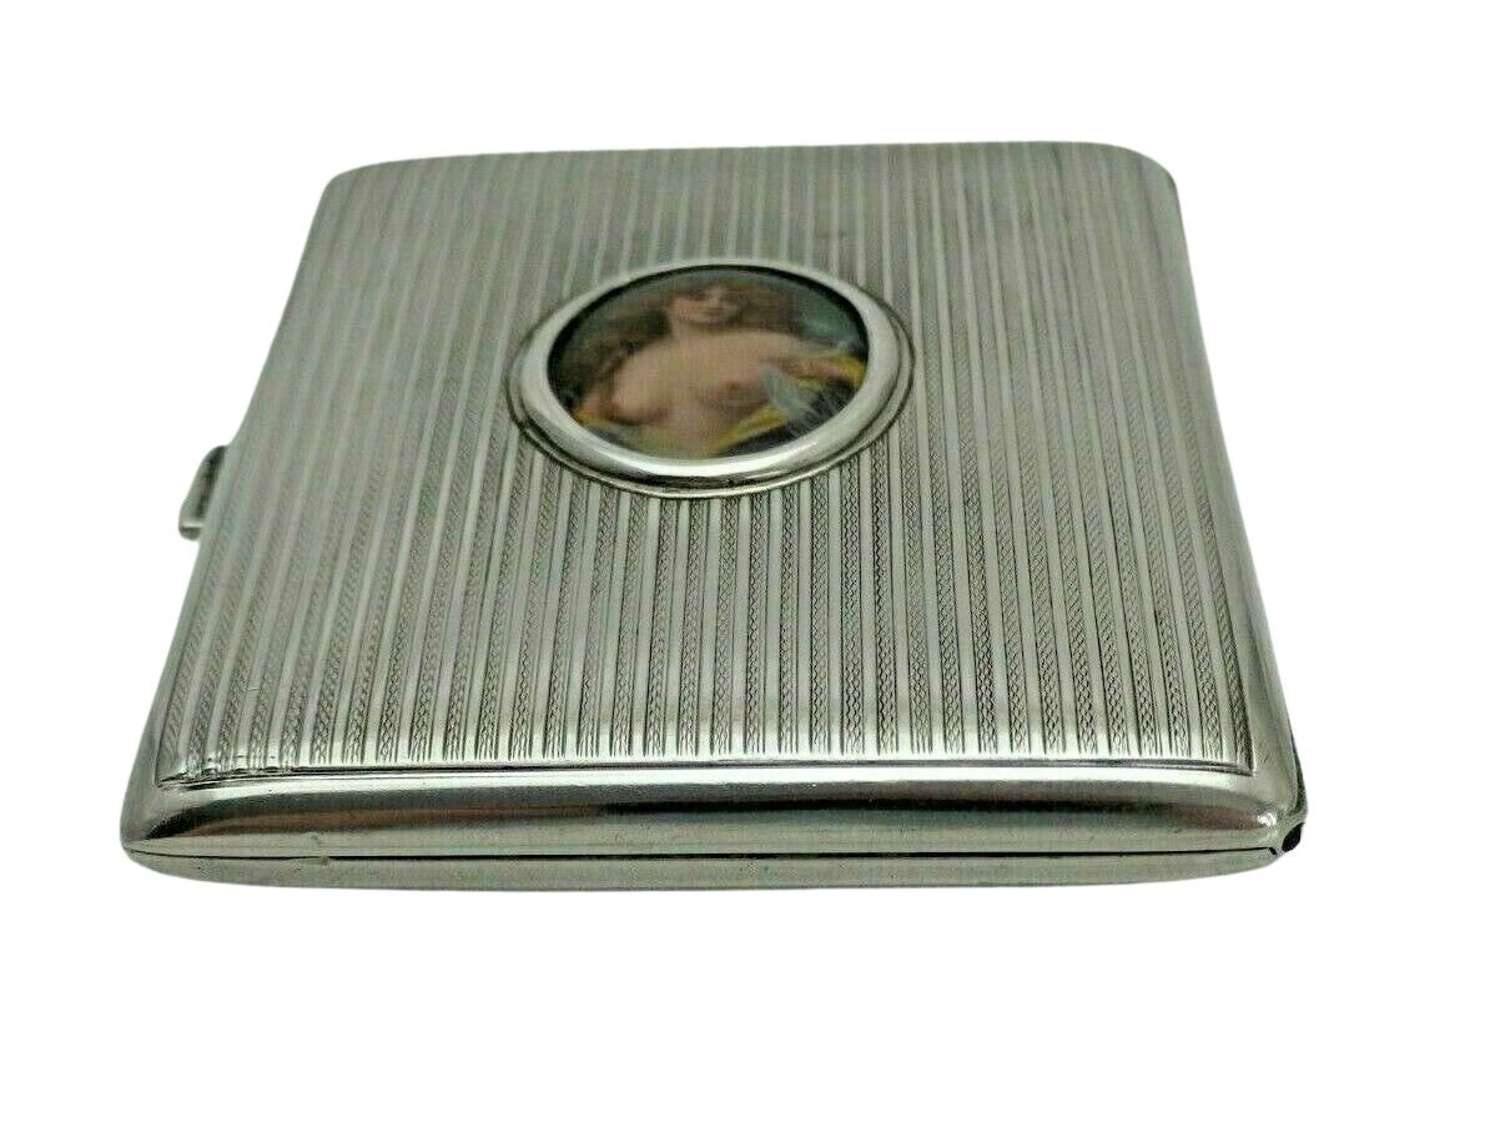 RARE Antique Solid Silver Card Cigarette Case